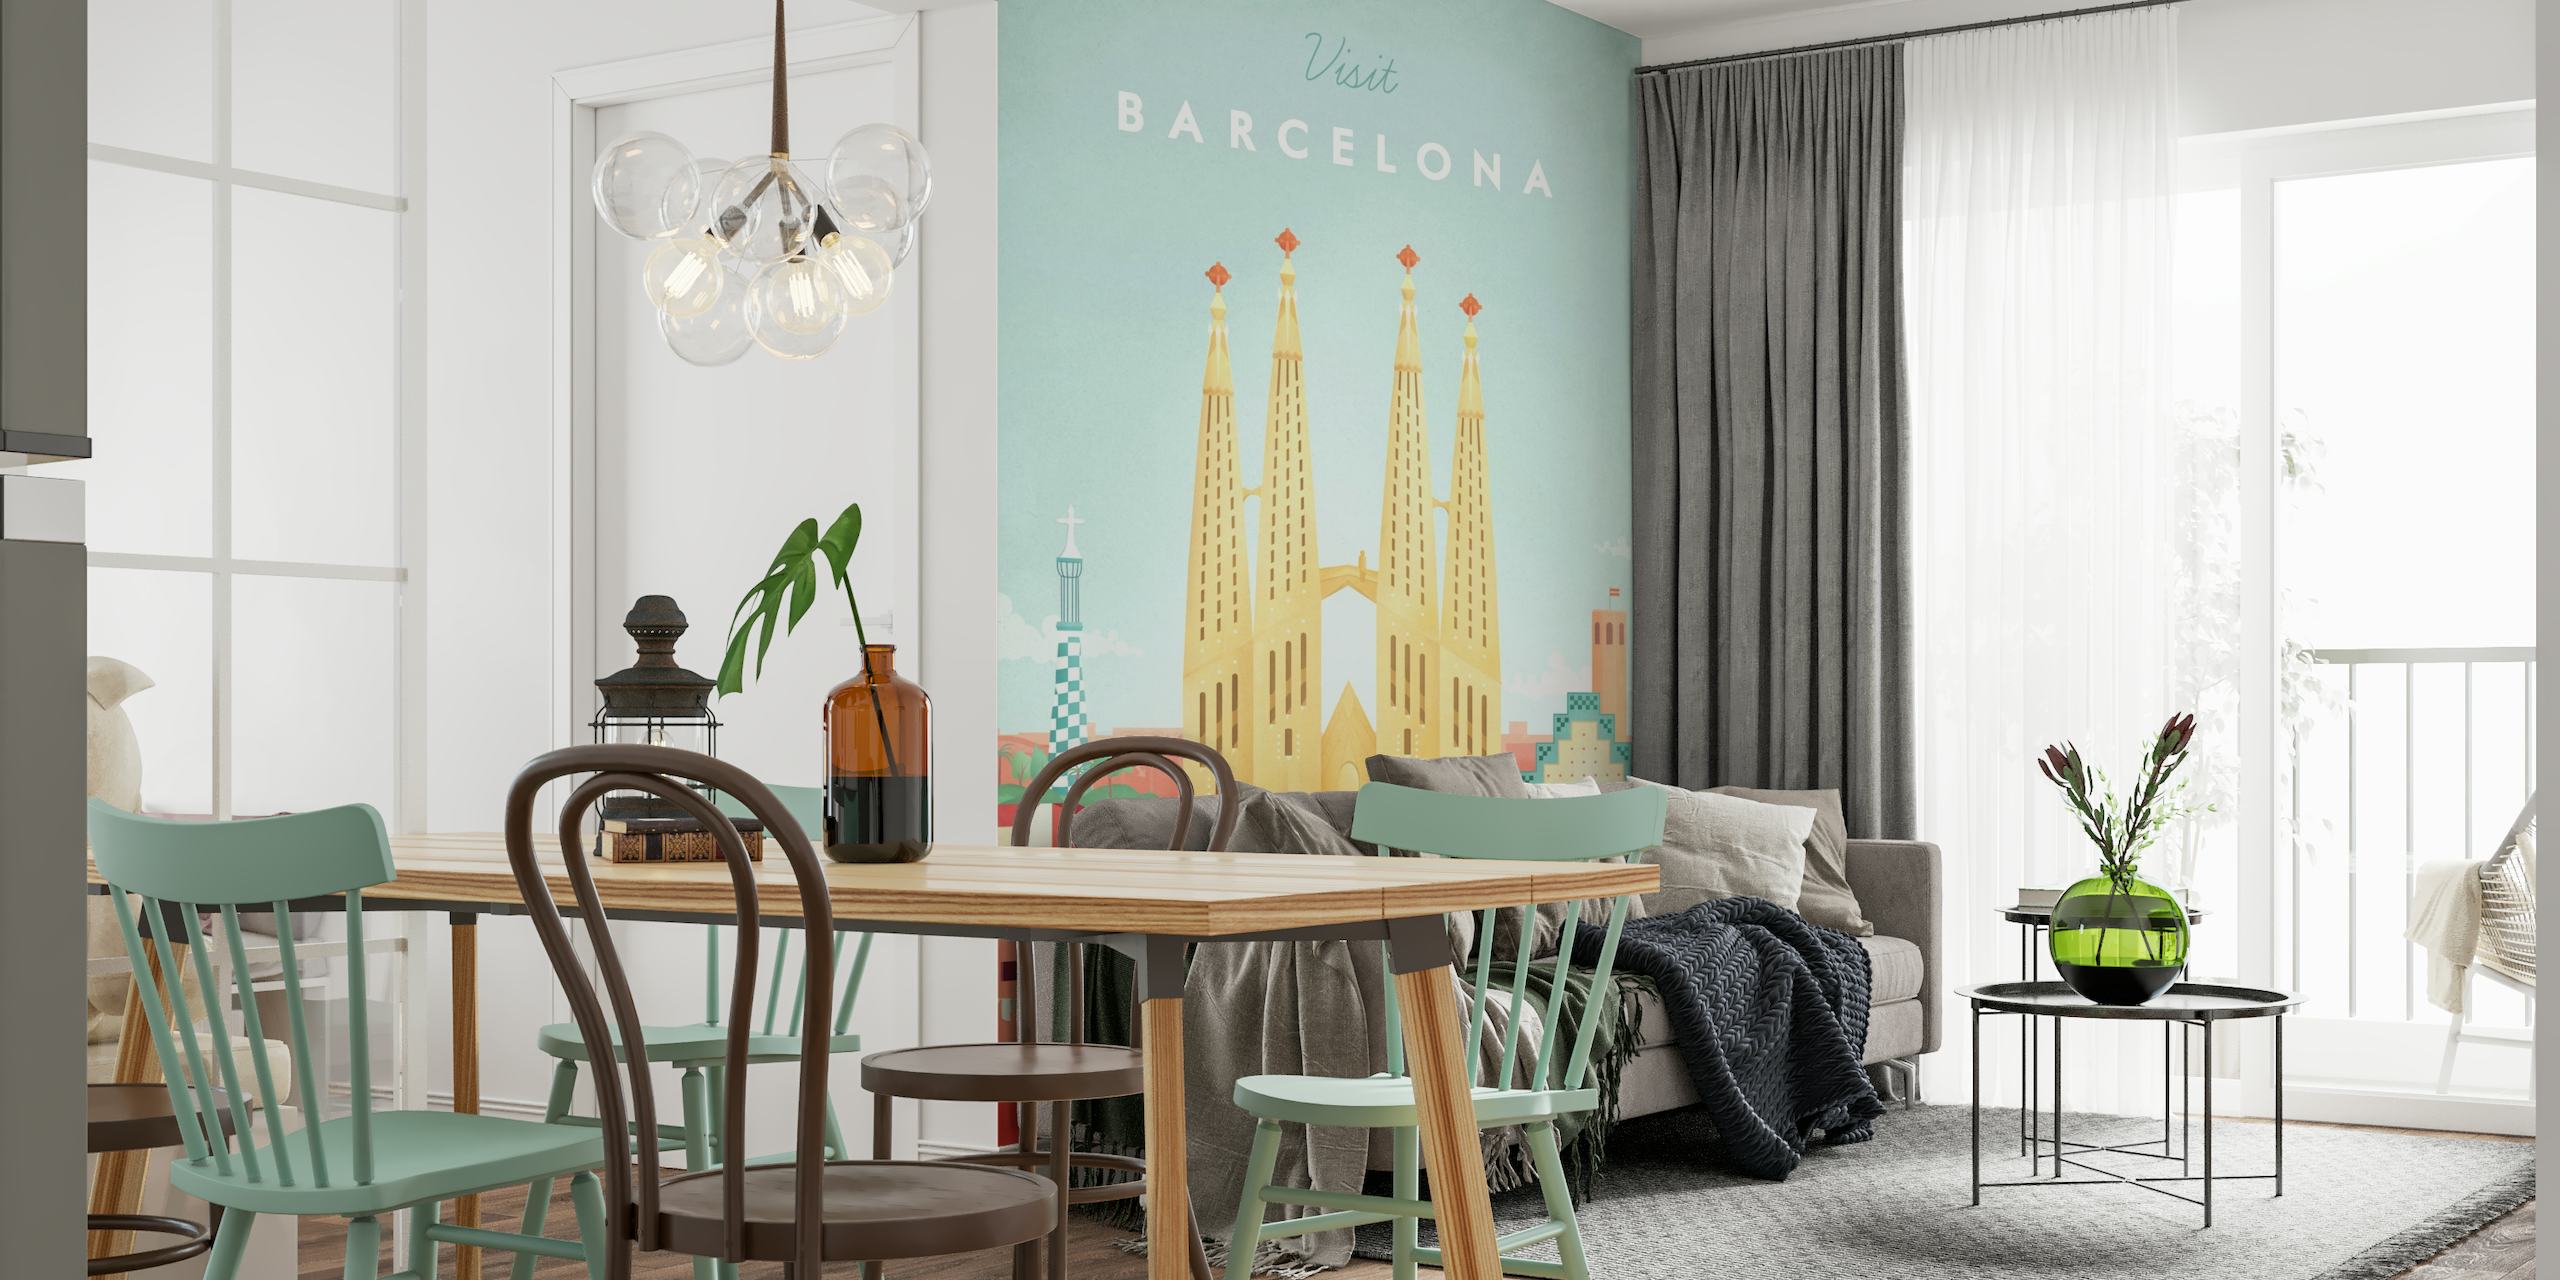 Barcelona Travel Poster carta da parati